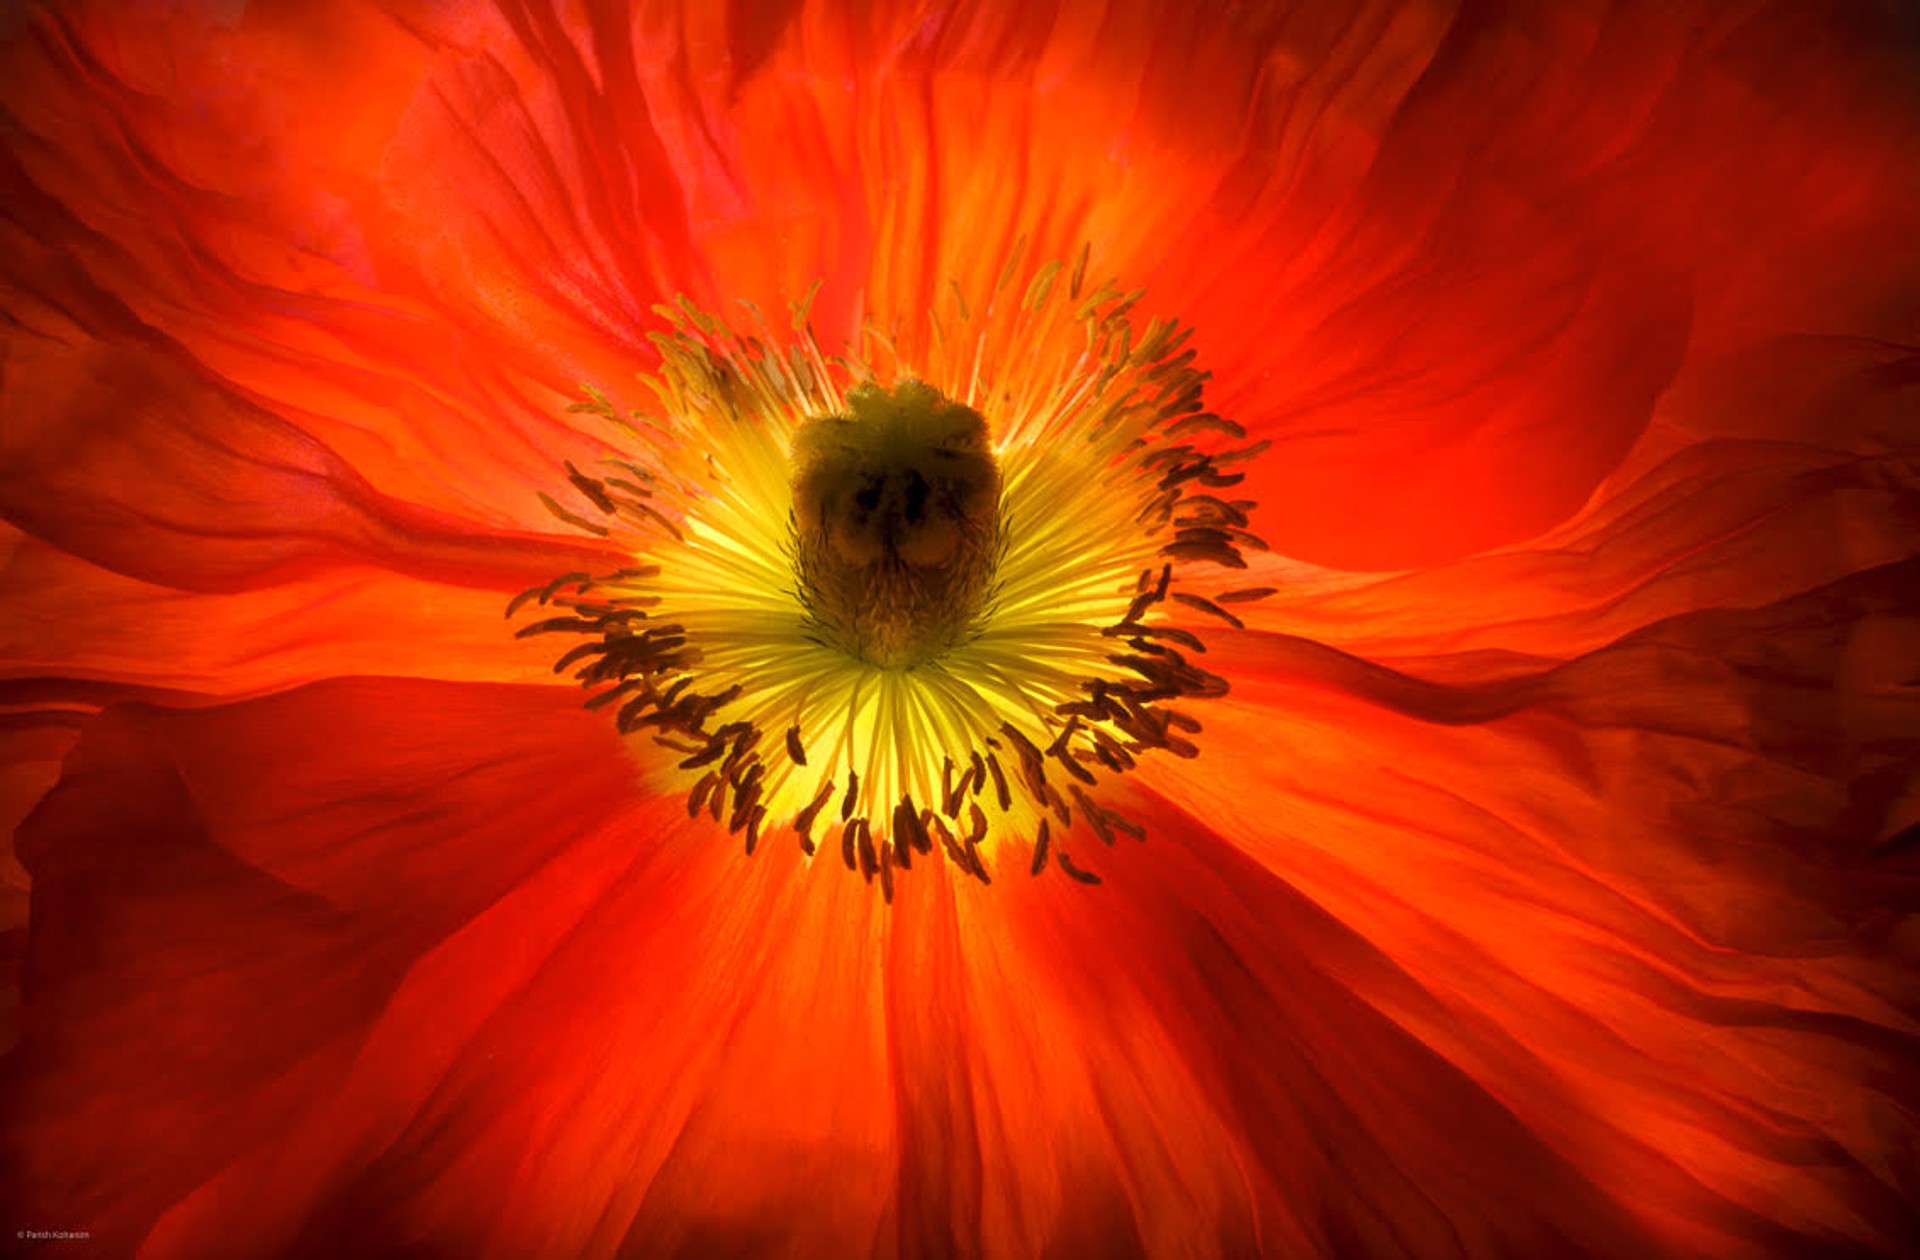 Luminescent Red Poppy by Parish Kohanim, Luminescence